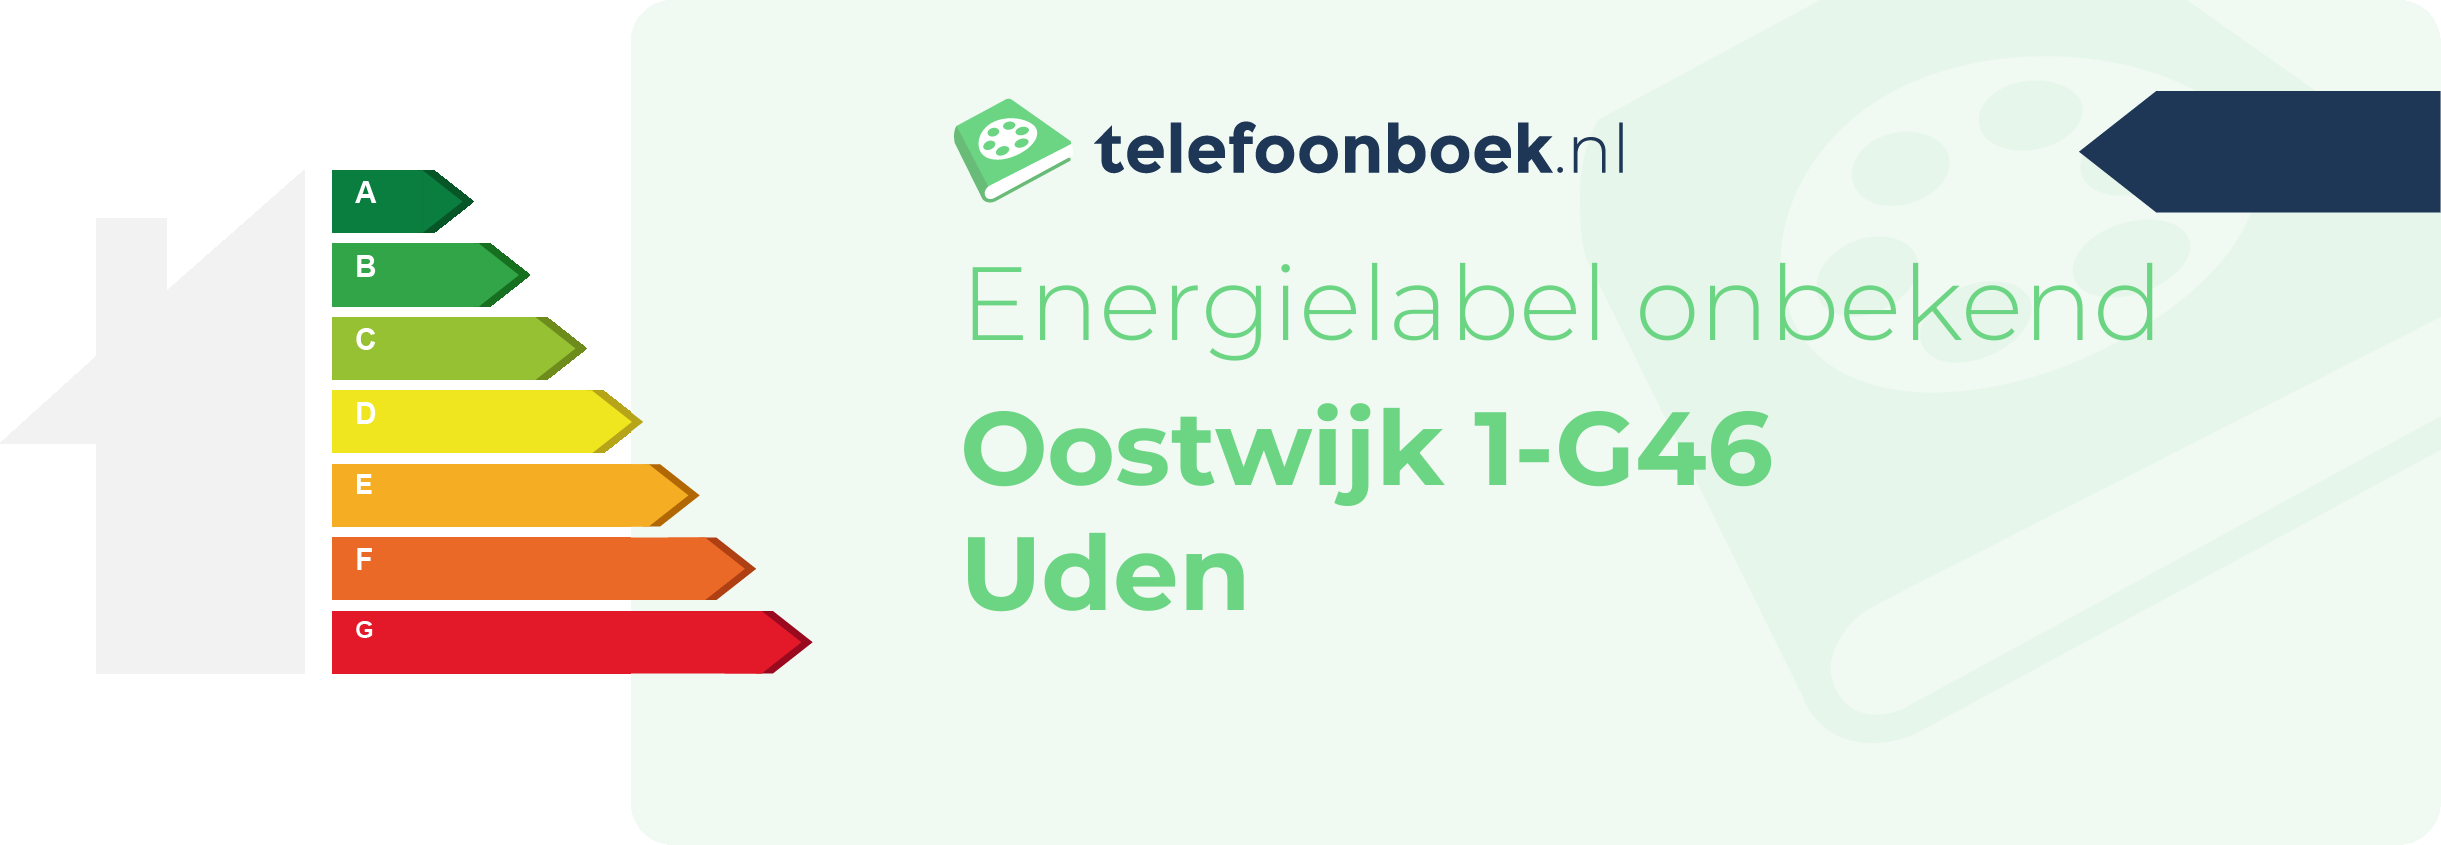 Energielabel Oostwijk 1-G46 Uden